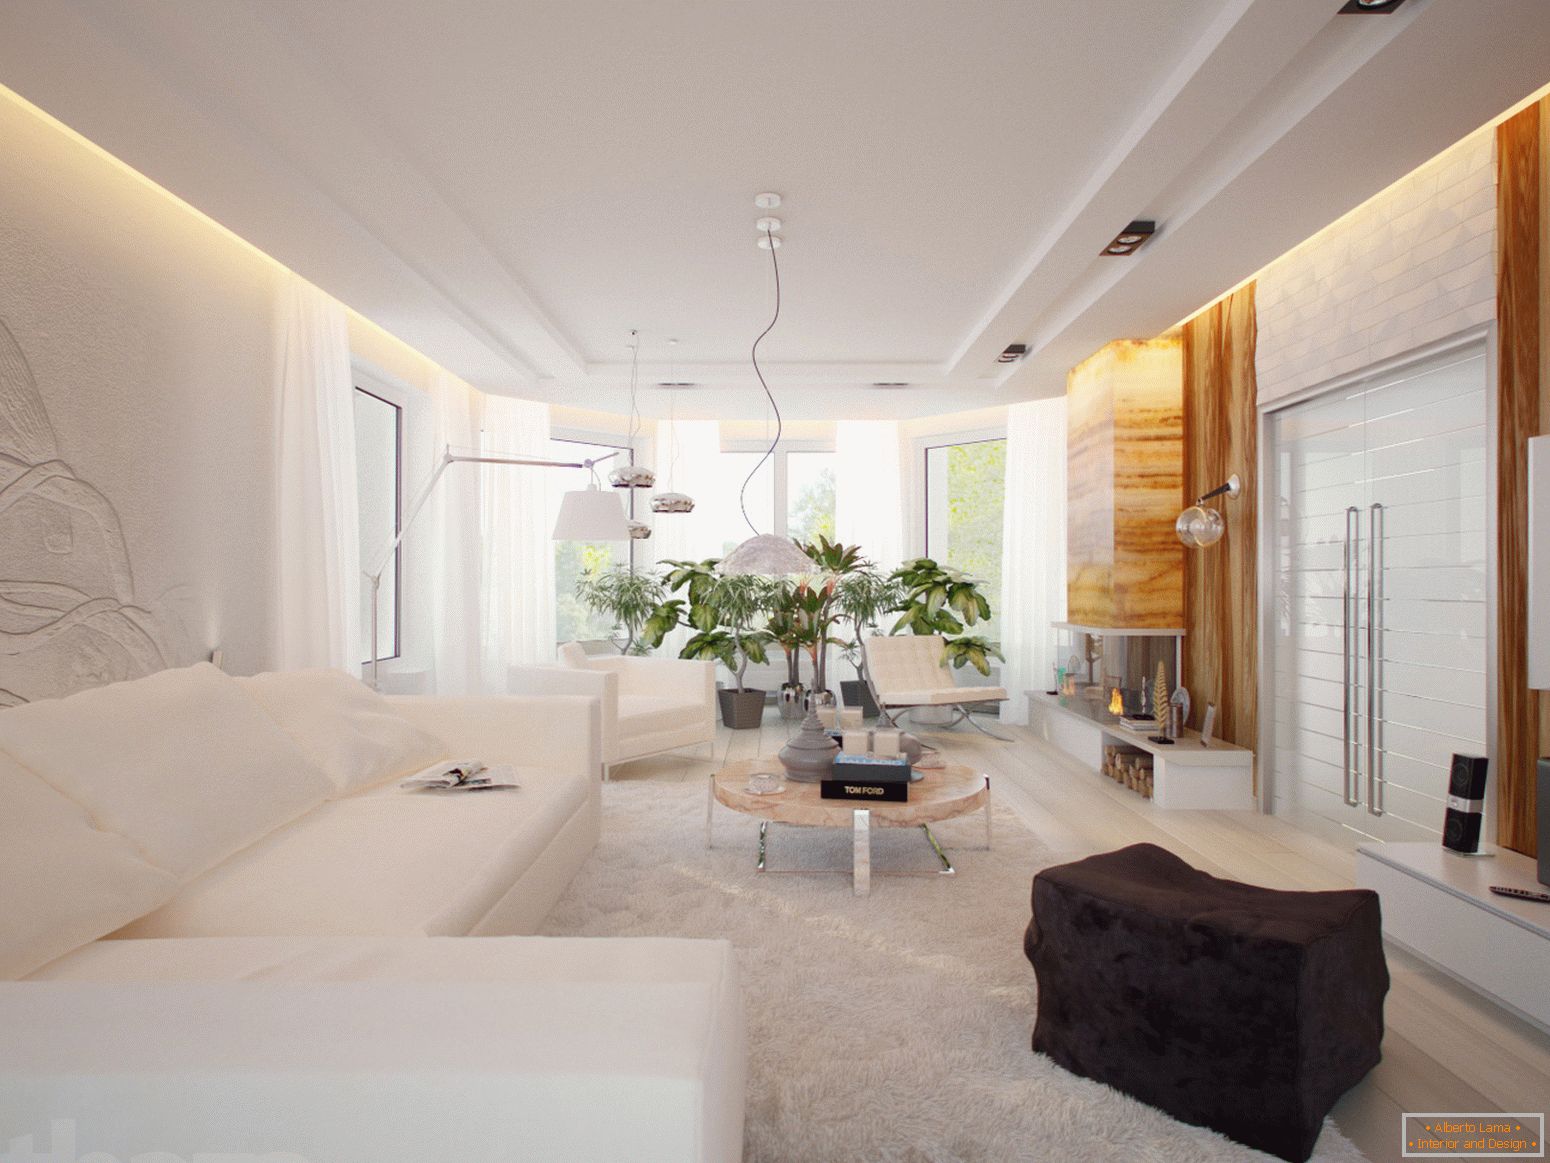 Prostorný a světlý pokoj v minimalistickém stylu je vynikajícím příkladem náležitě vybraného nábytku.